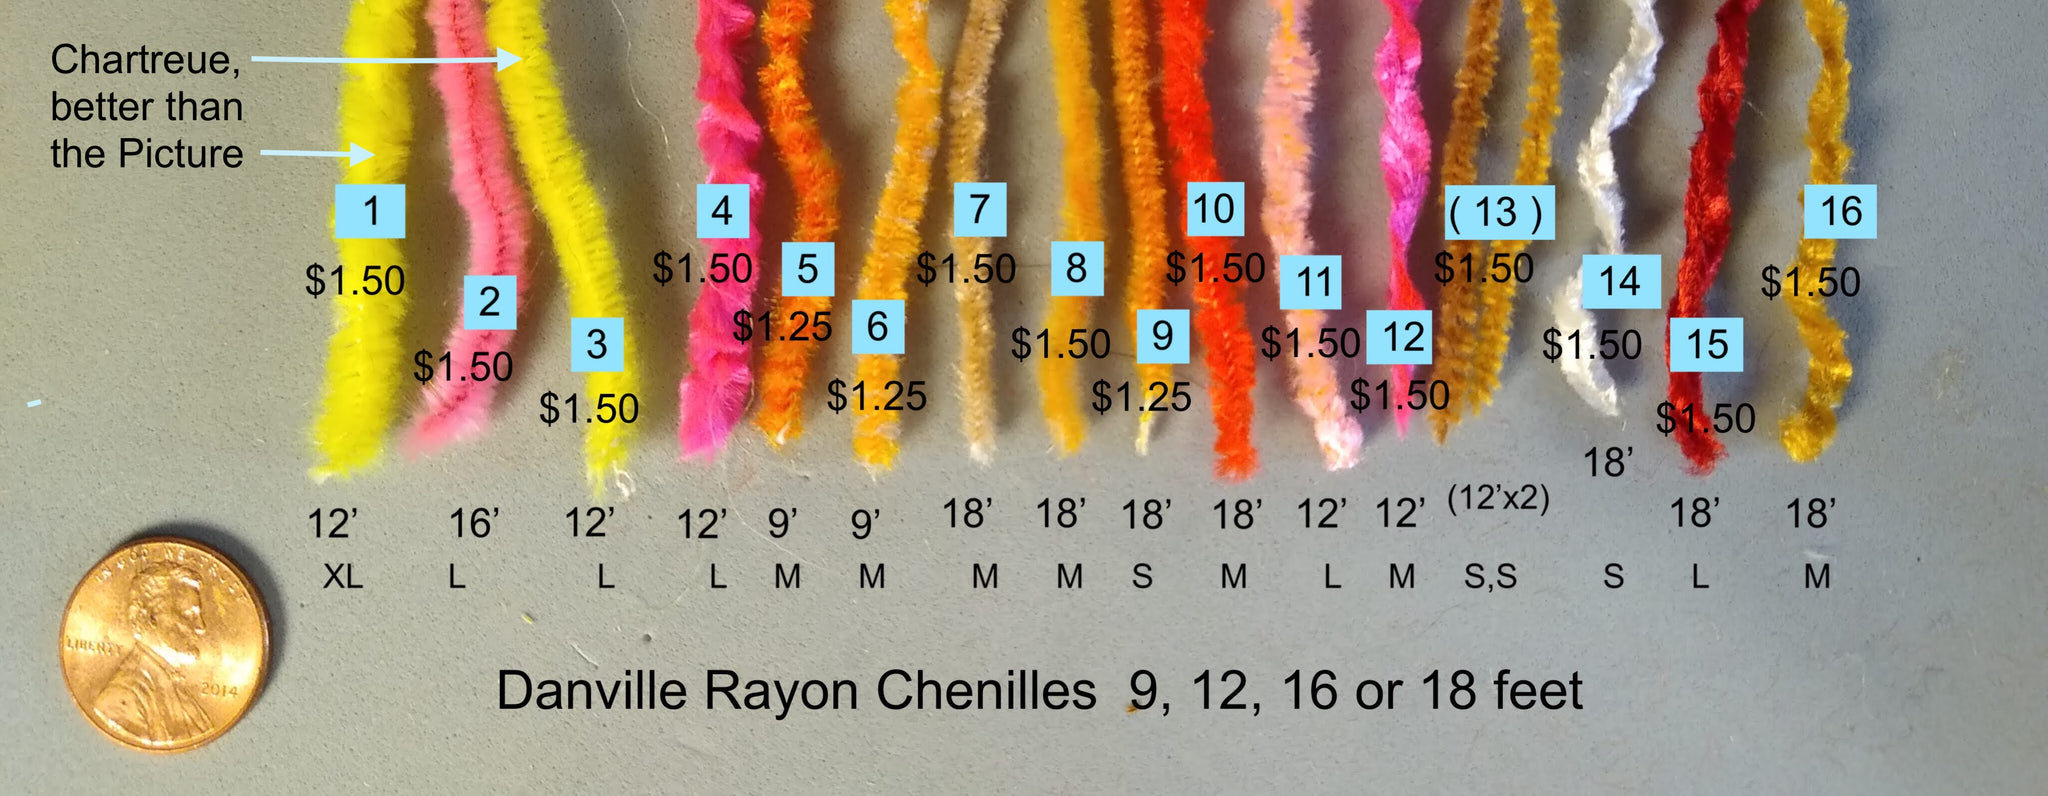 Danville Rayon Chenilles 16 sizes, colors